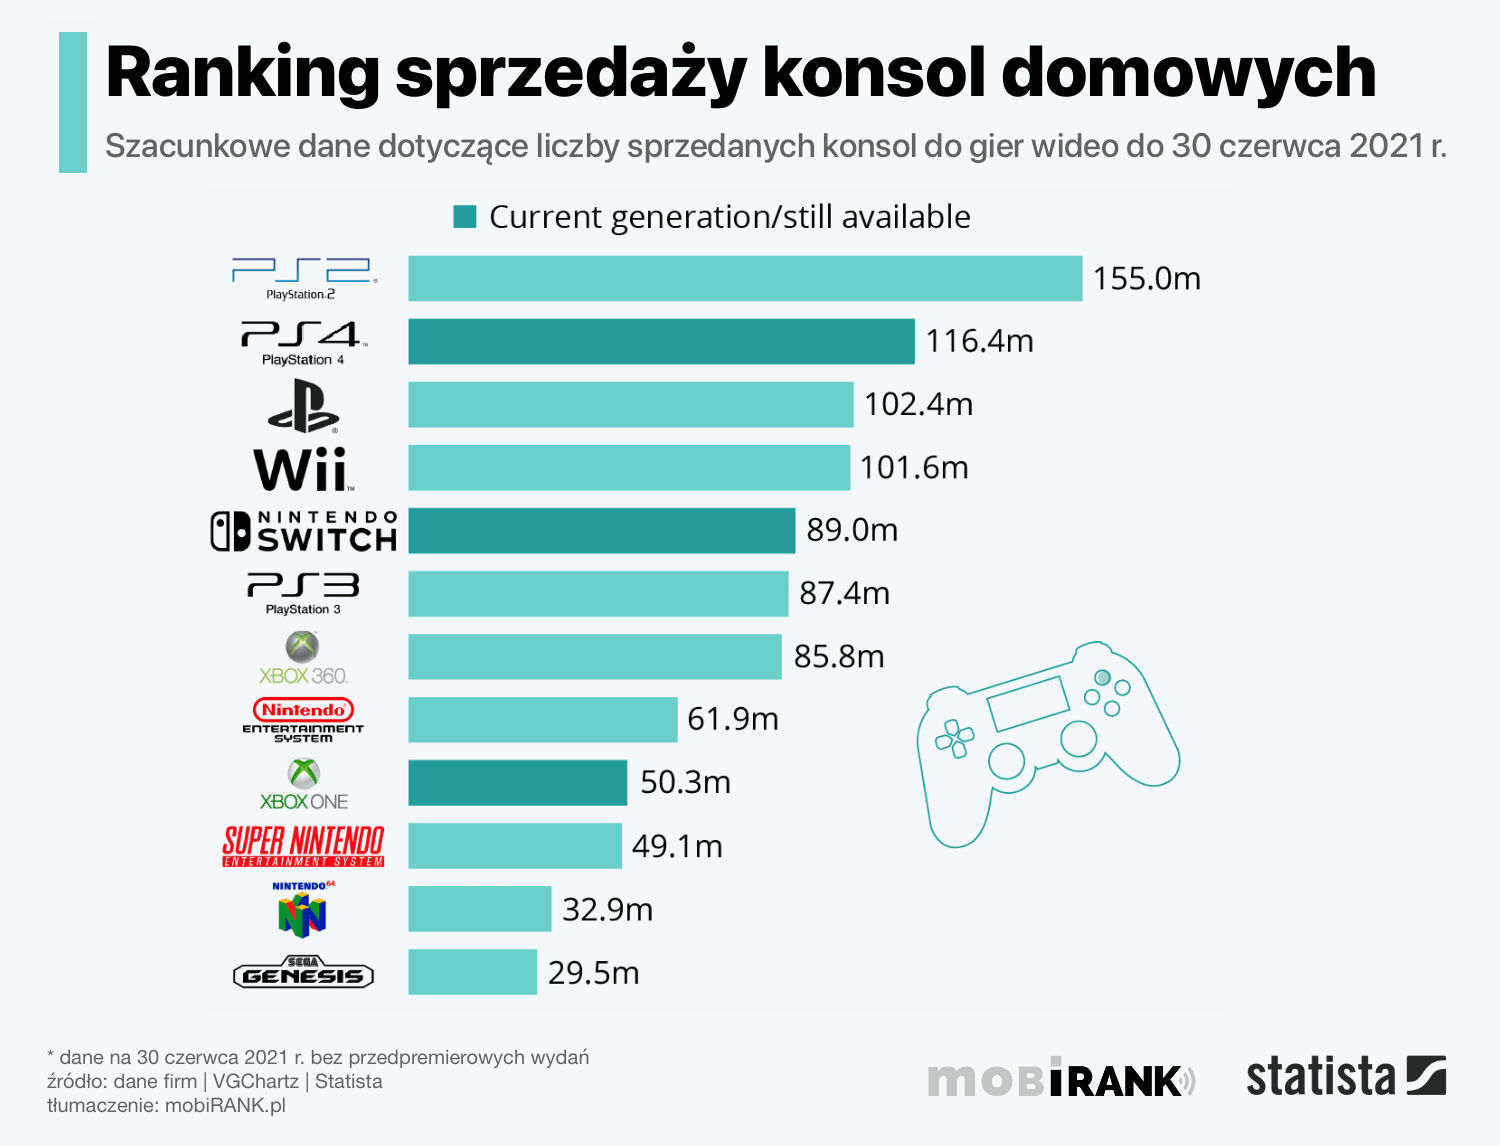 Ranking sprzedaży domowych konsol do gier wideo (stan na 30 czerwca 2021 r.)